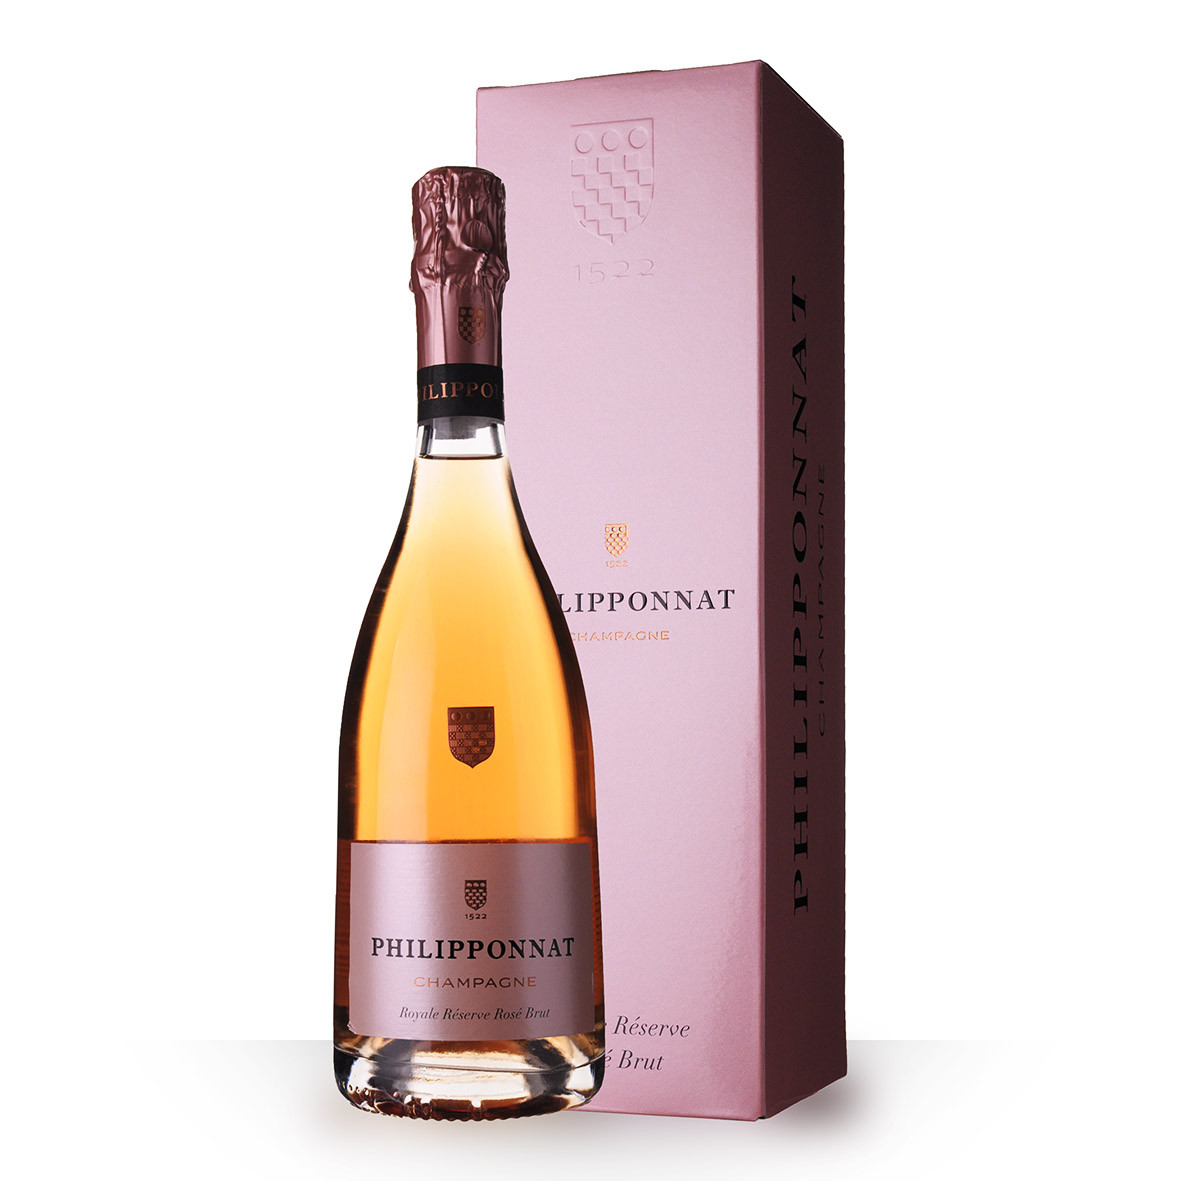 Champagne Philipponnat Royale Réserve Rosé 75cl Etui www.odyssee-vins.com